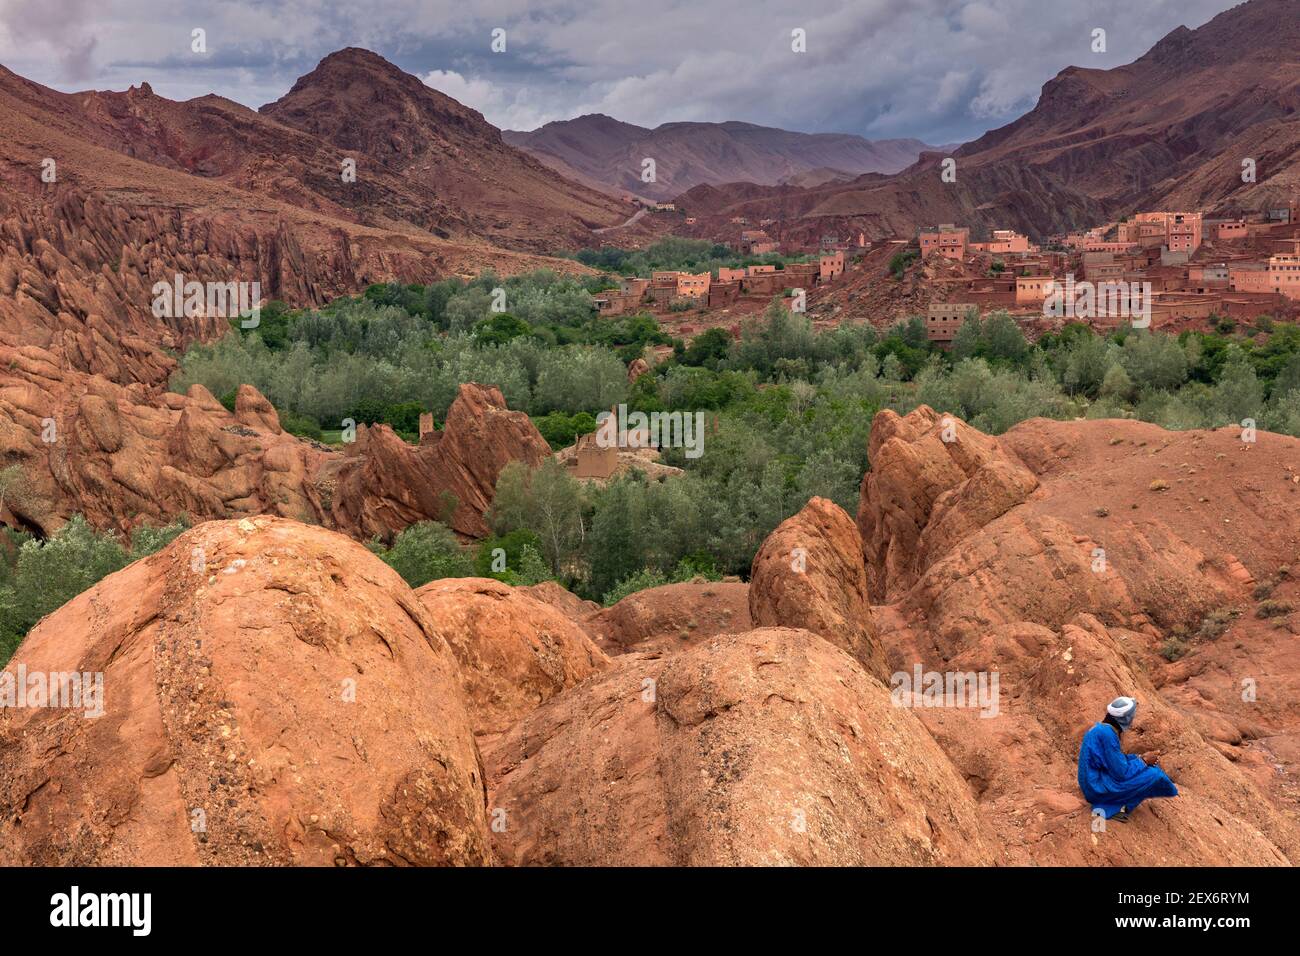 Marokko, Dades Valley in der Nähe der 'Monkey Paws' Felsformationen, mit Berber Männchen in blau gekleidet. Eine karge Landschaft mit üppiger Vegetation entlang eines Flusses. Stockfoto